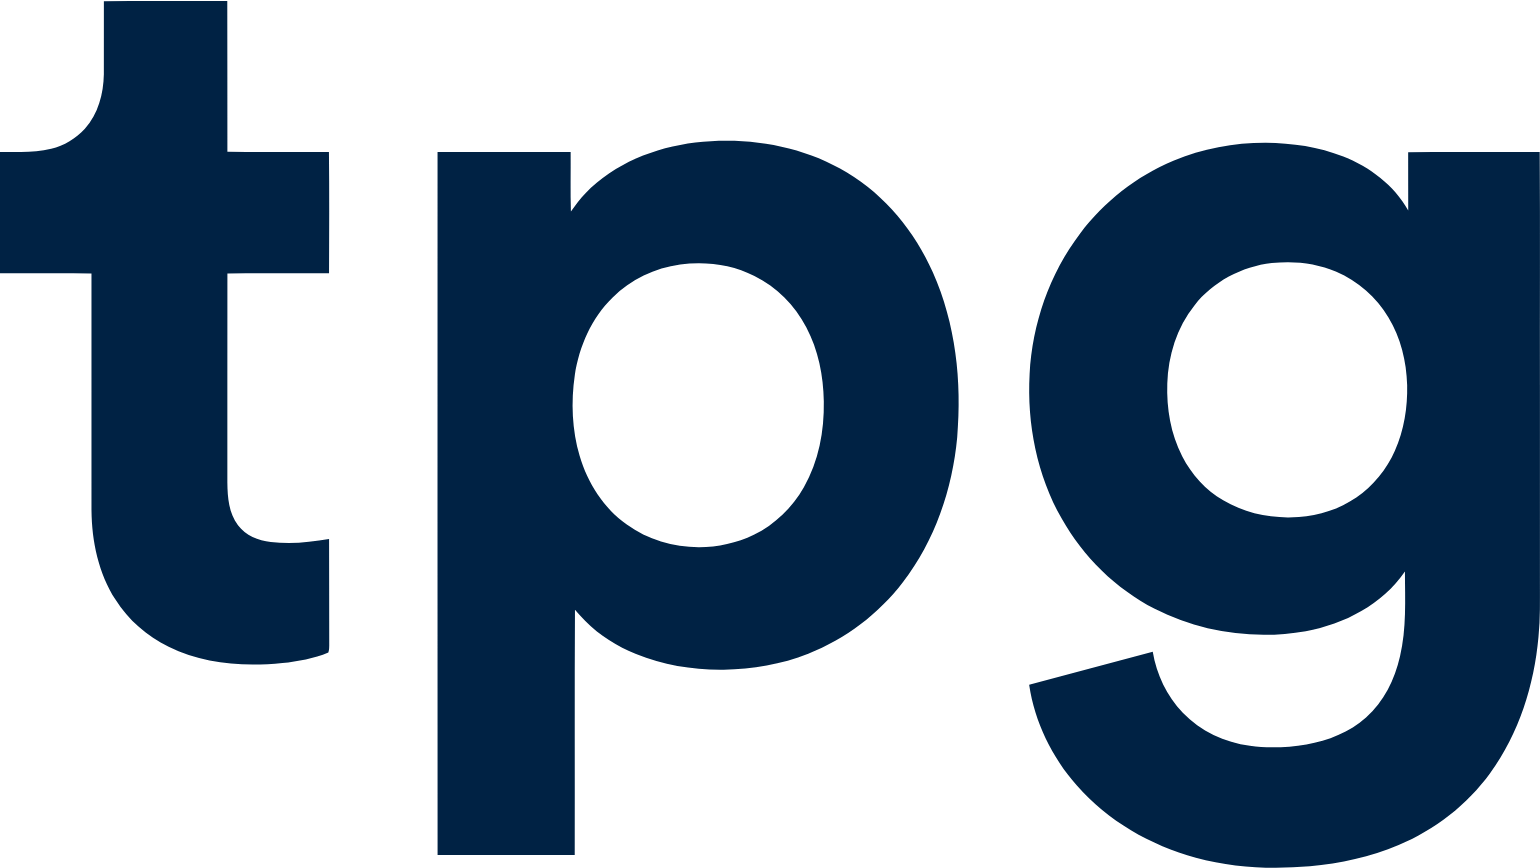 TPG Telecom logo (transparent PNG)